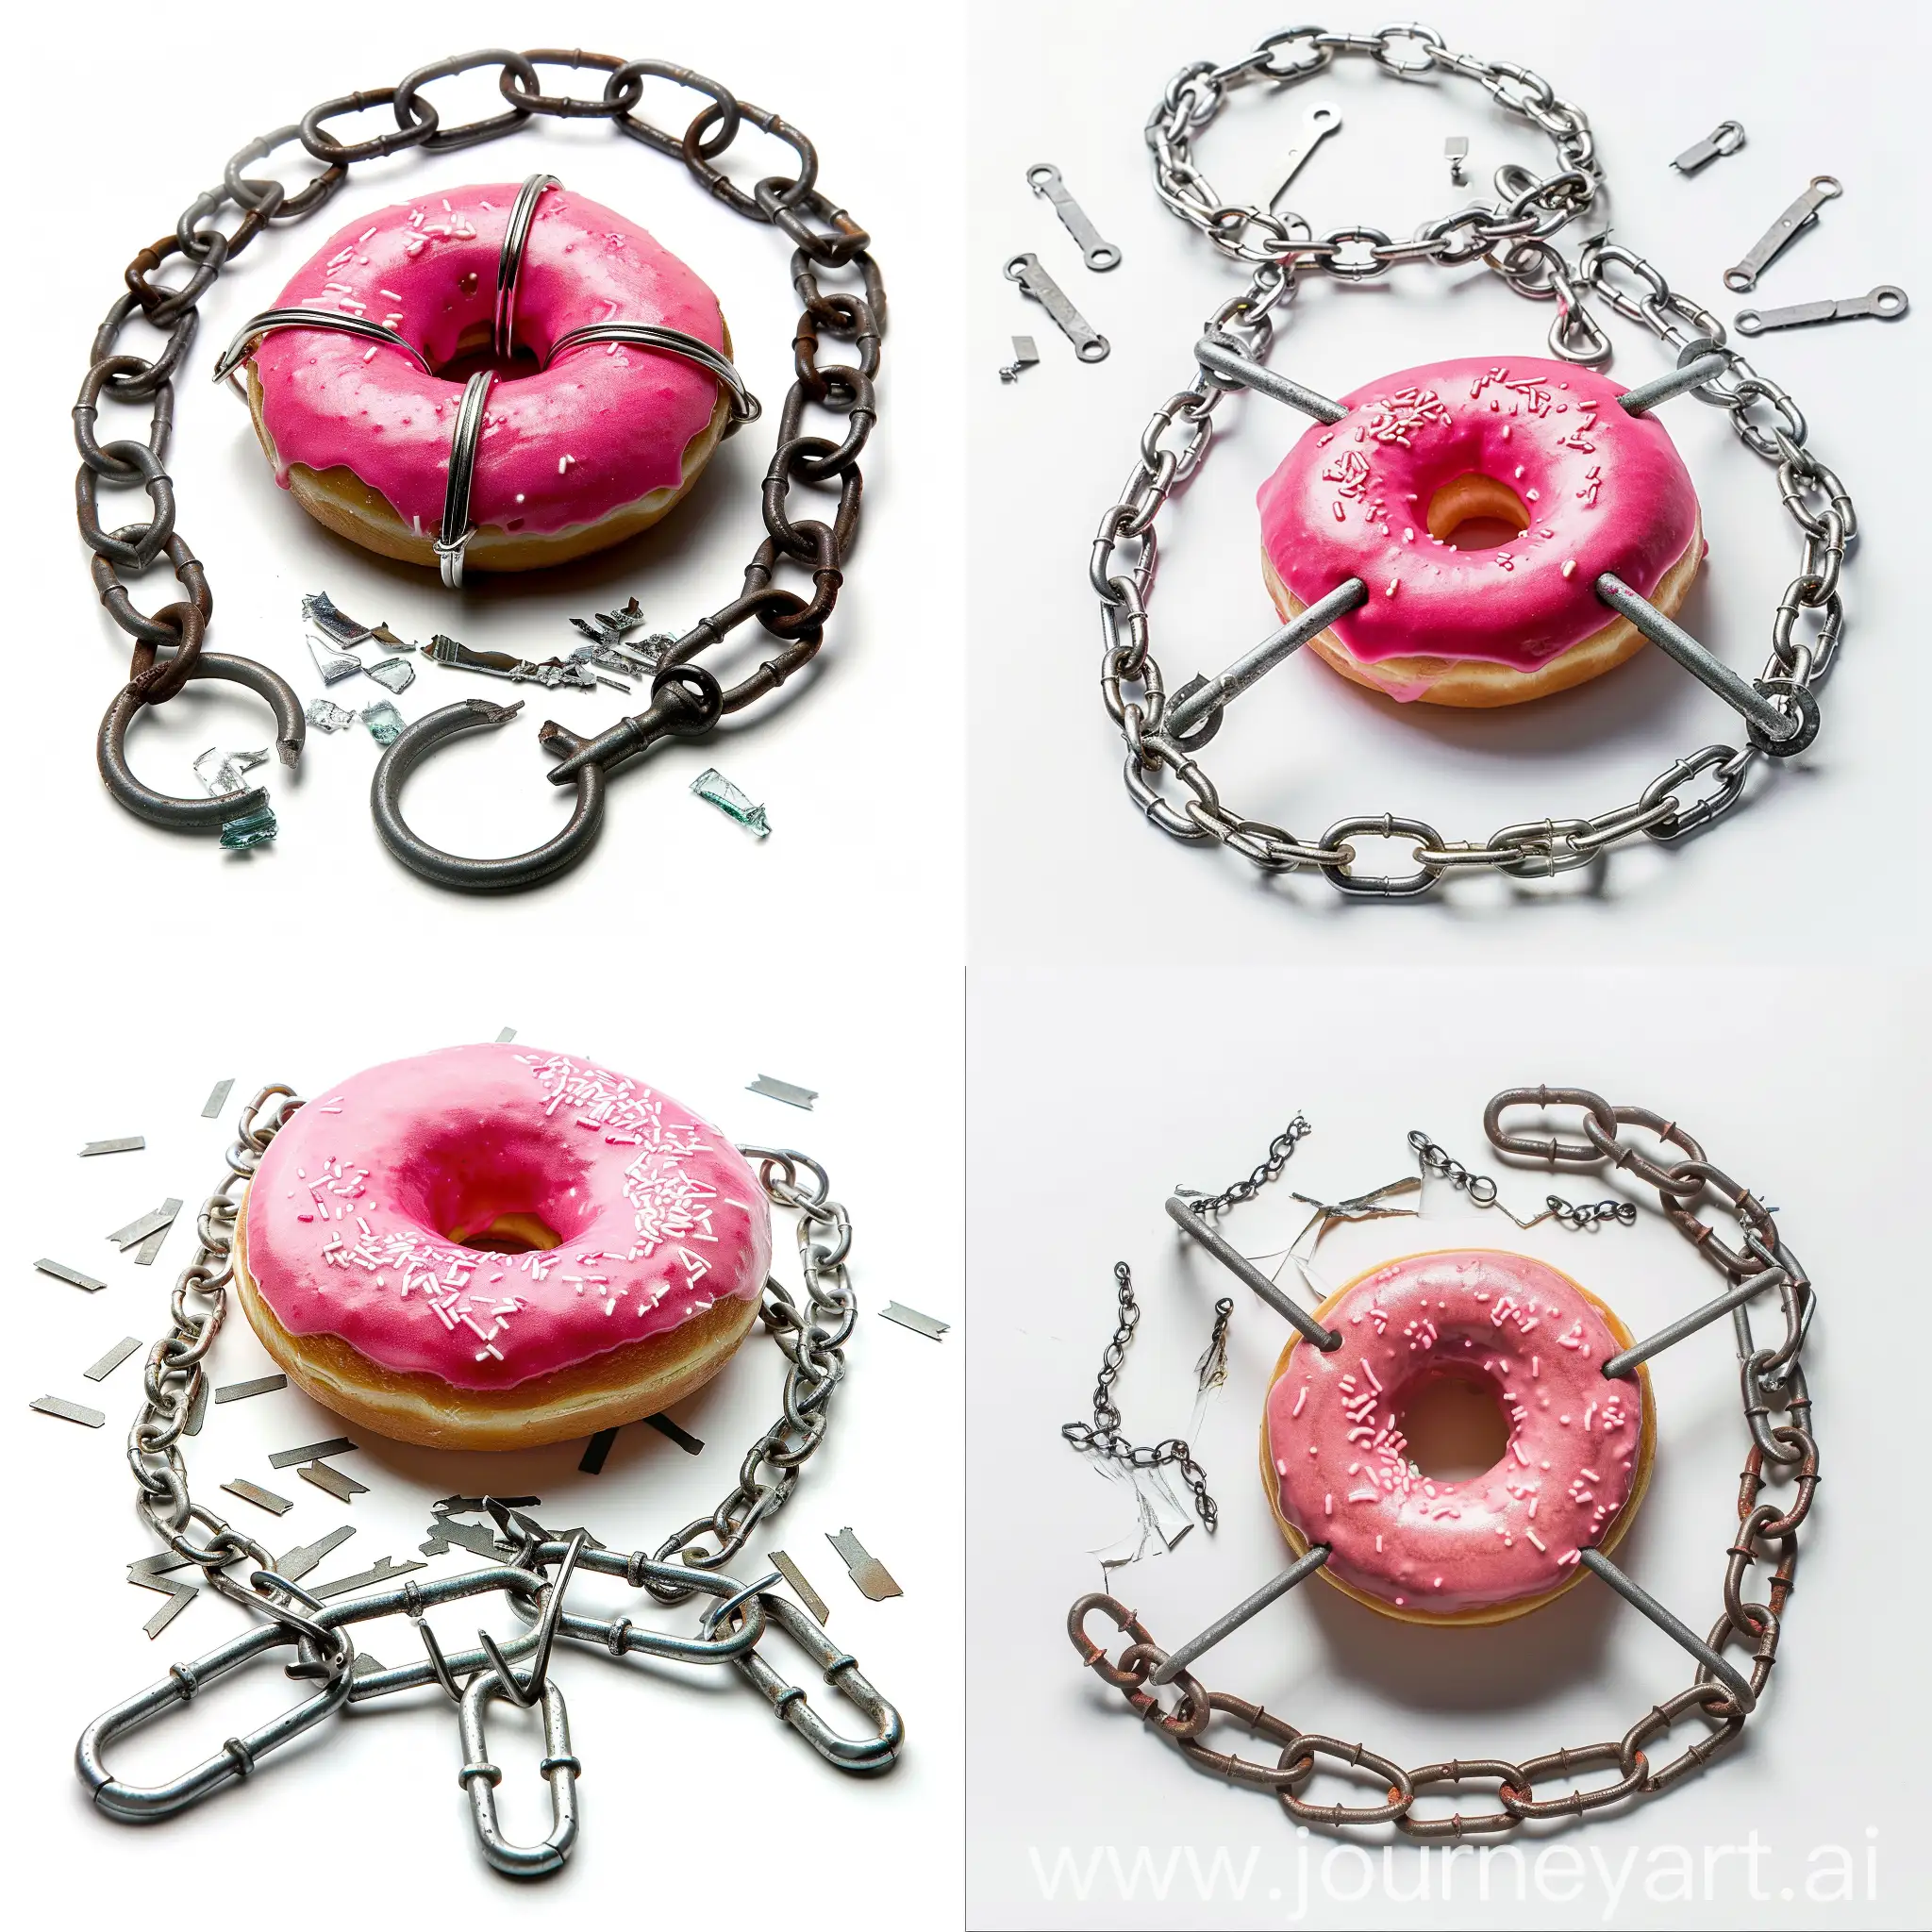 Broken-Chain-Links-Surrounding-Shackled-Donut-on-White-Background